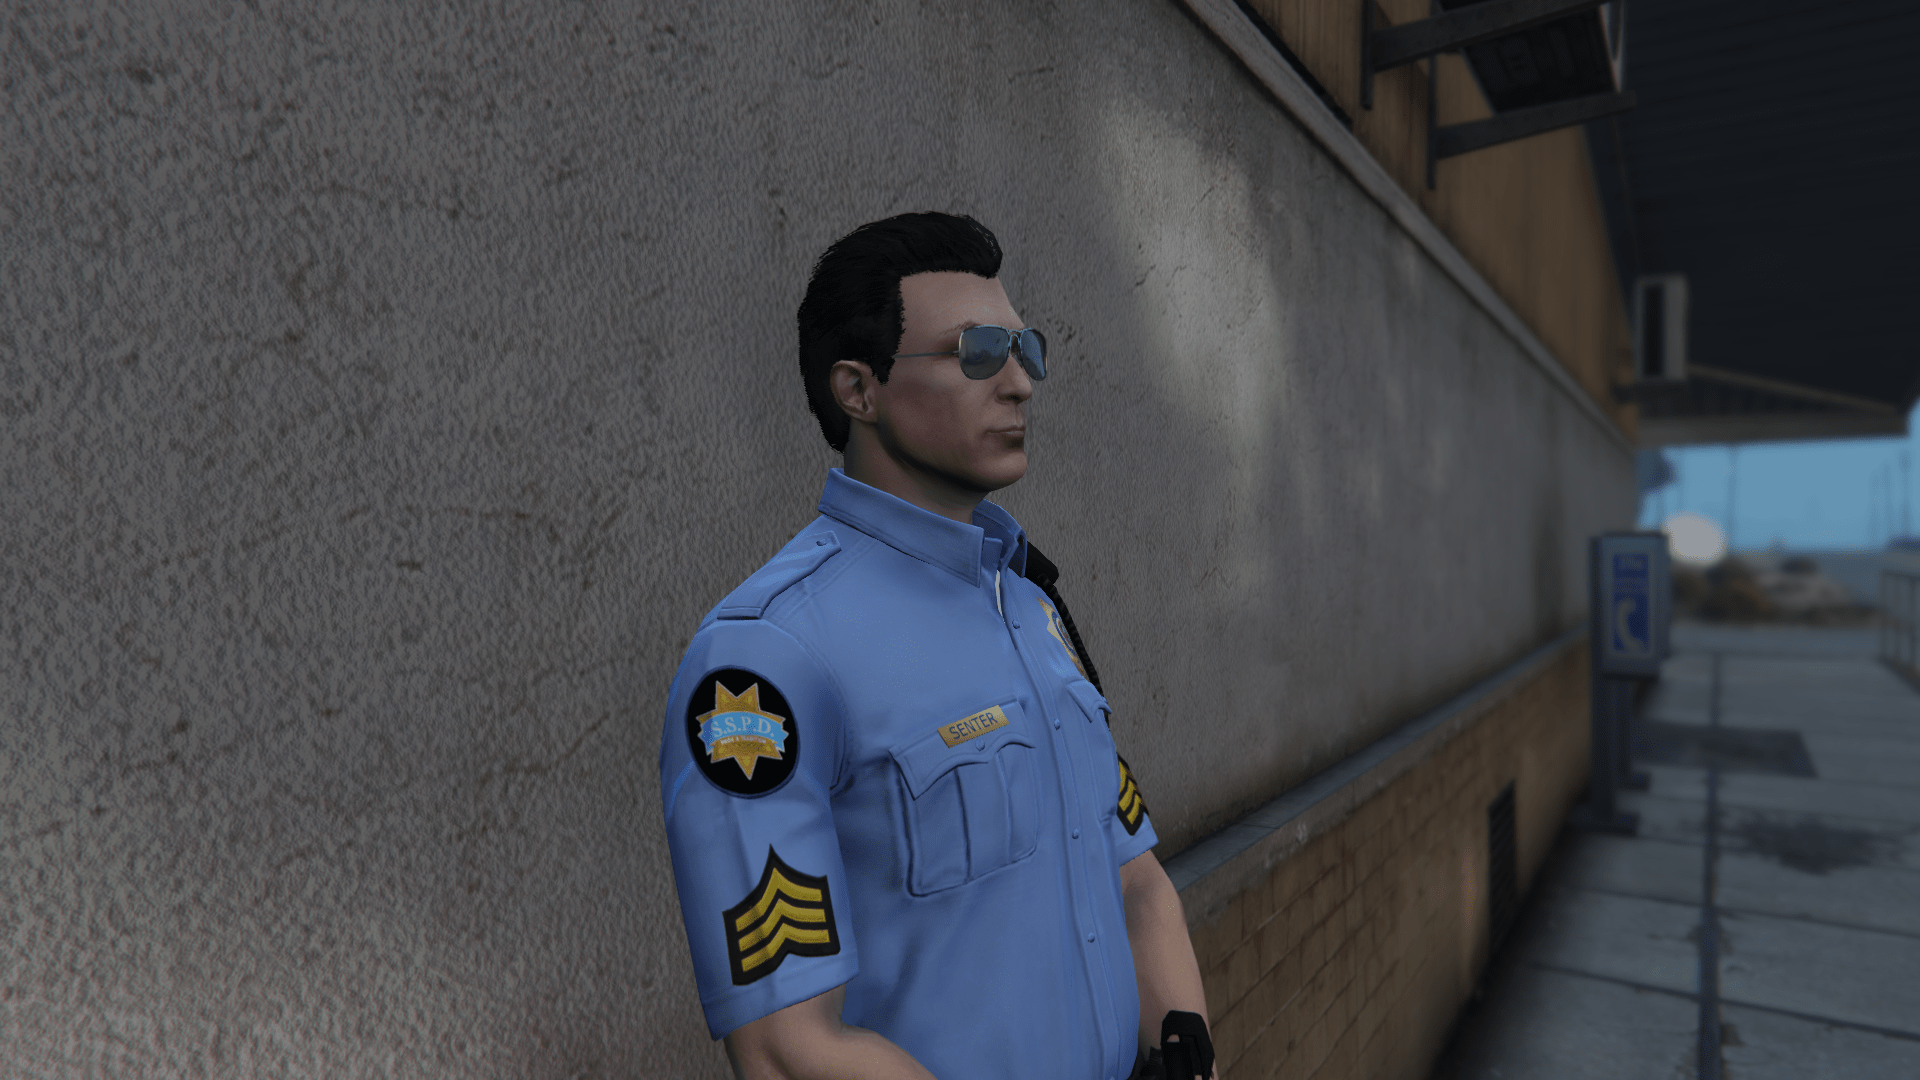 Oroszlán Történelem Választ Fivem Police Uniform Pack Előre Merevség